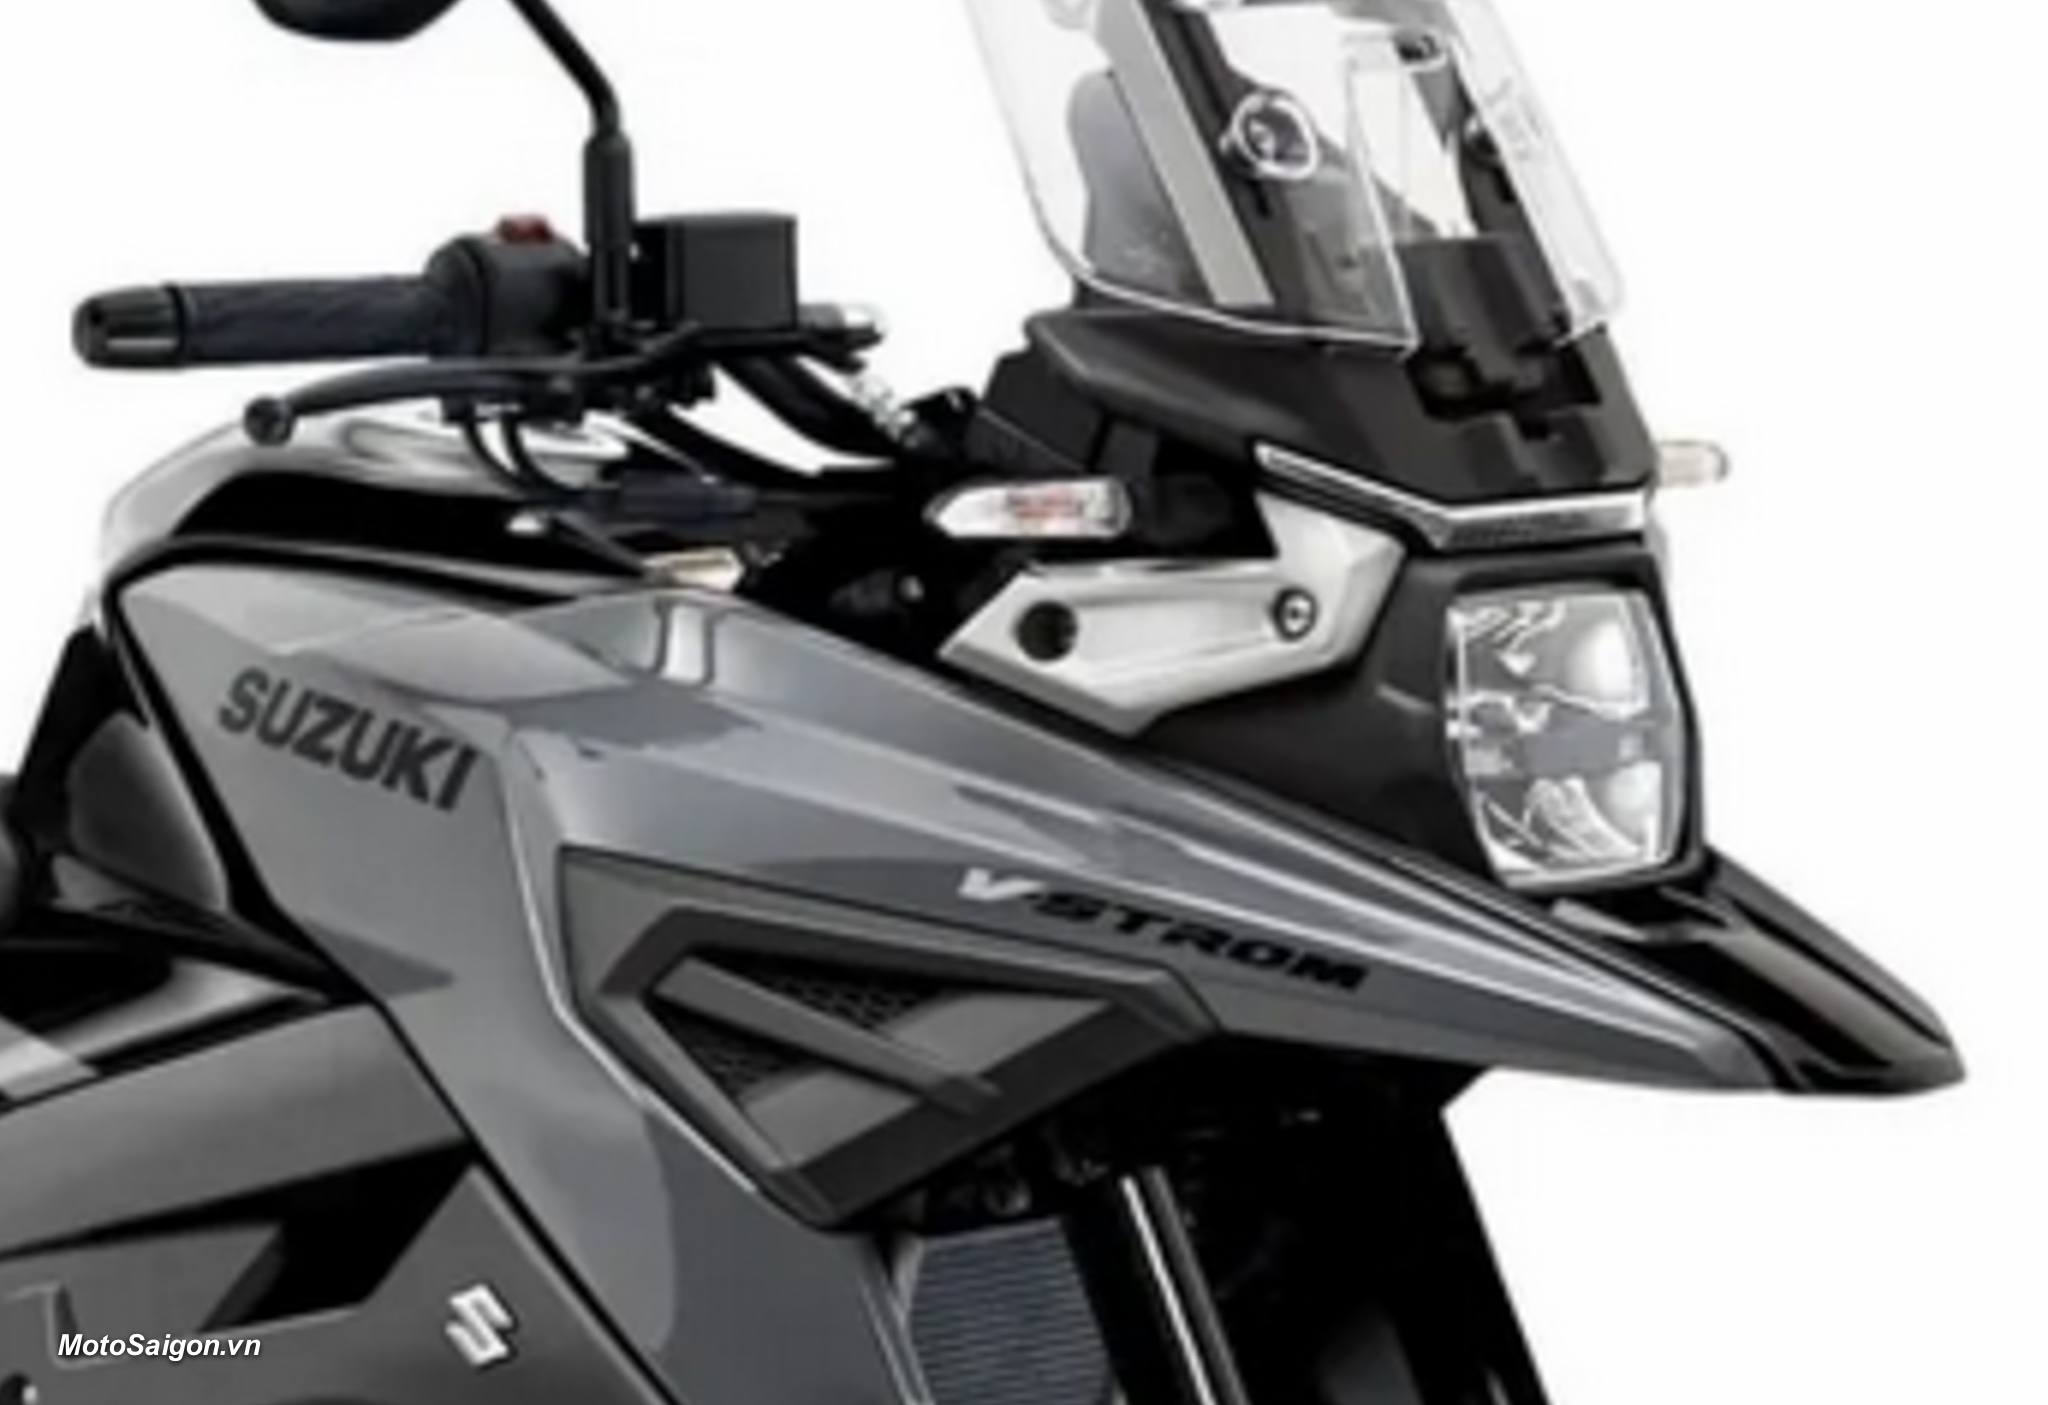 Suzuki V-Strom 150 được dự đoán là đối thủ của Honda CB150X 2022